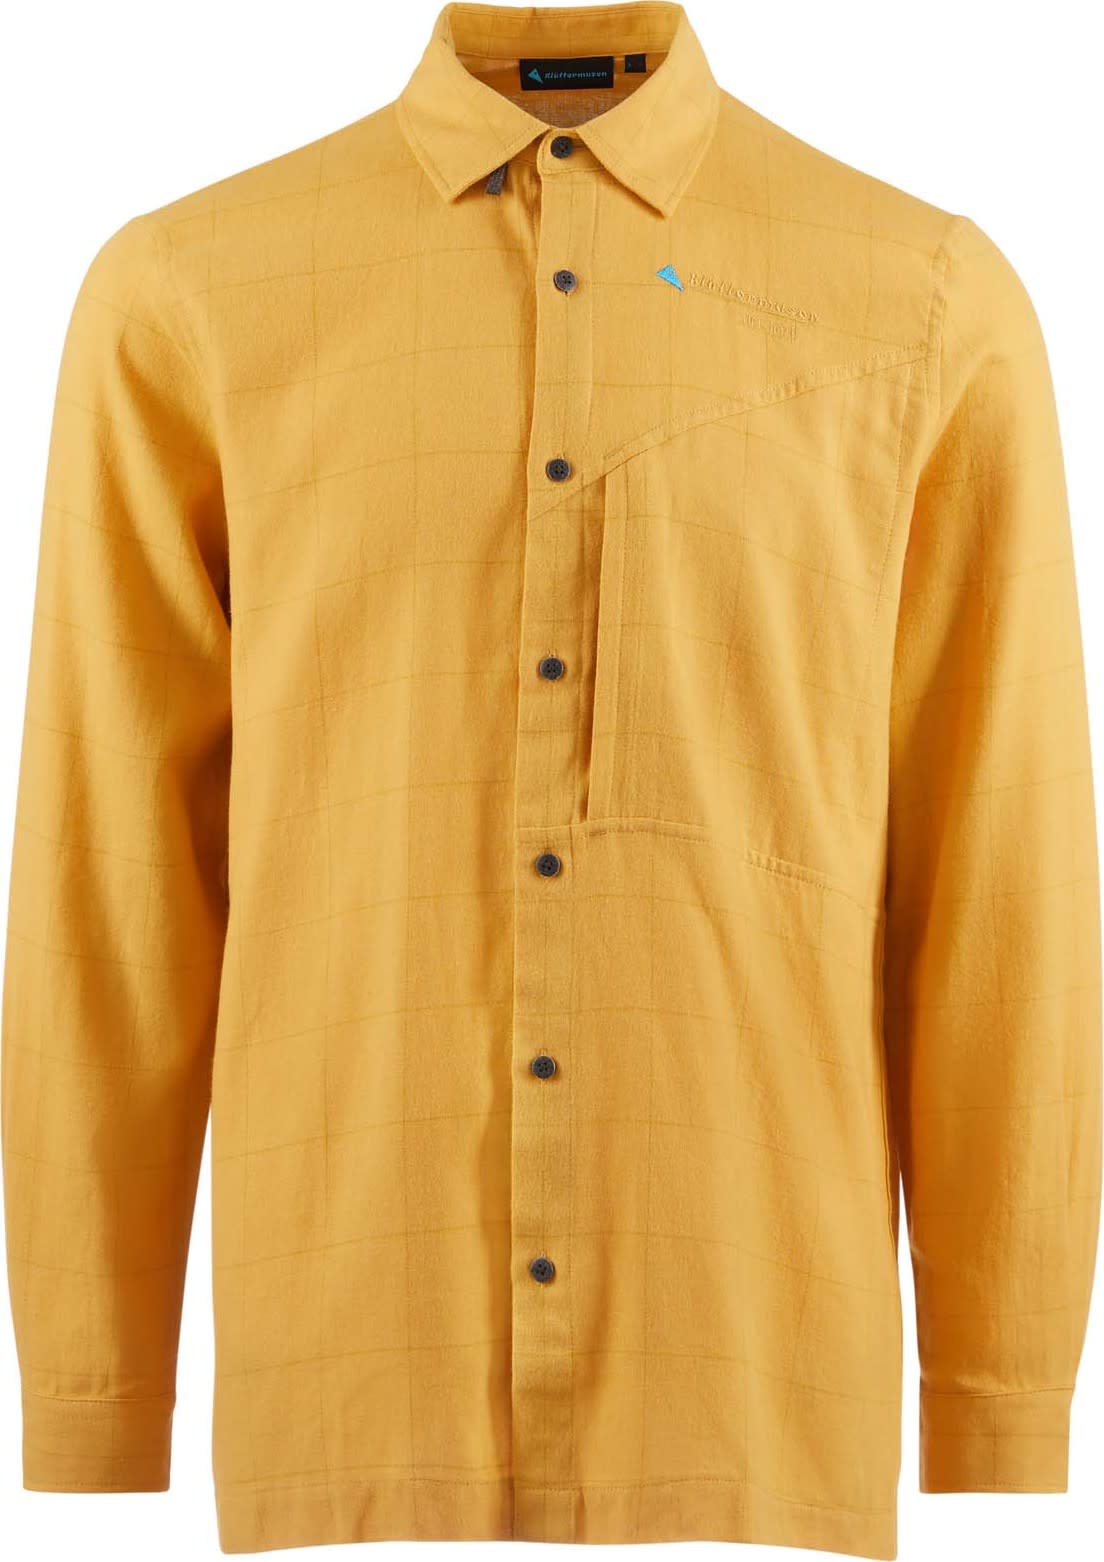 Klättermusen Men's Helheim Long Sleeve Shirt Amber Gold L, Amber Gold